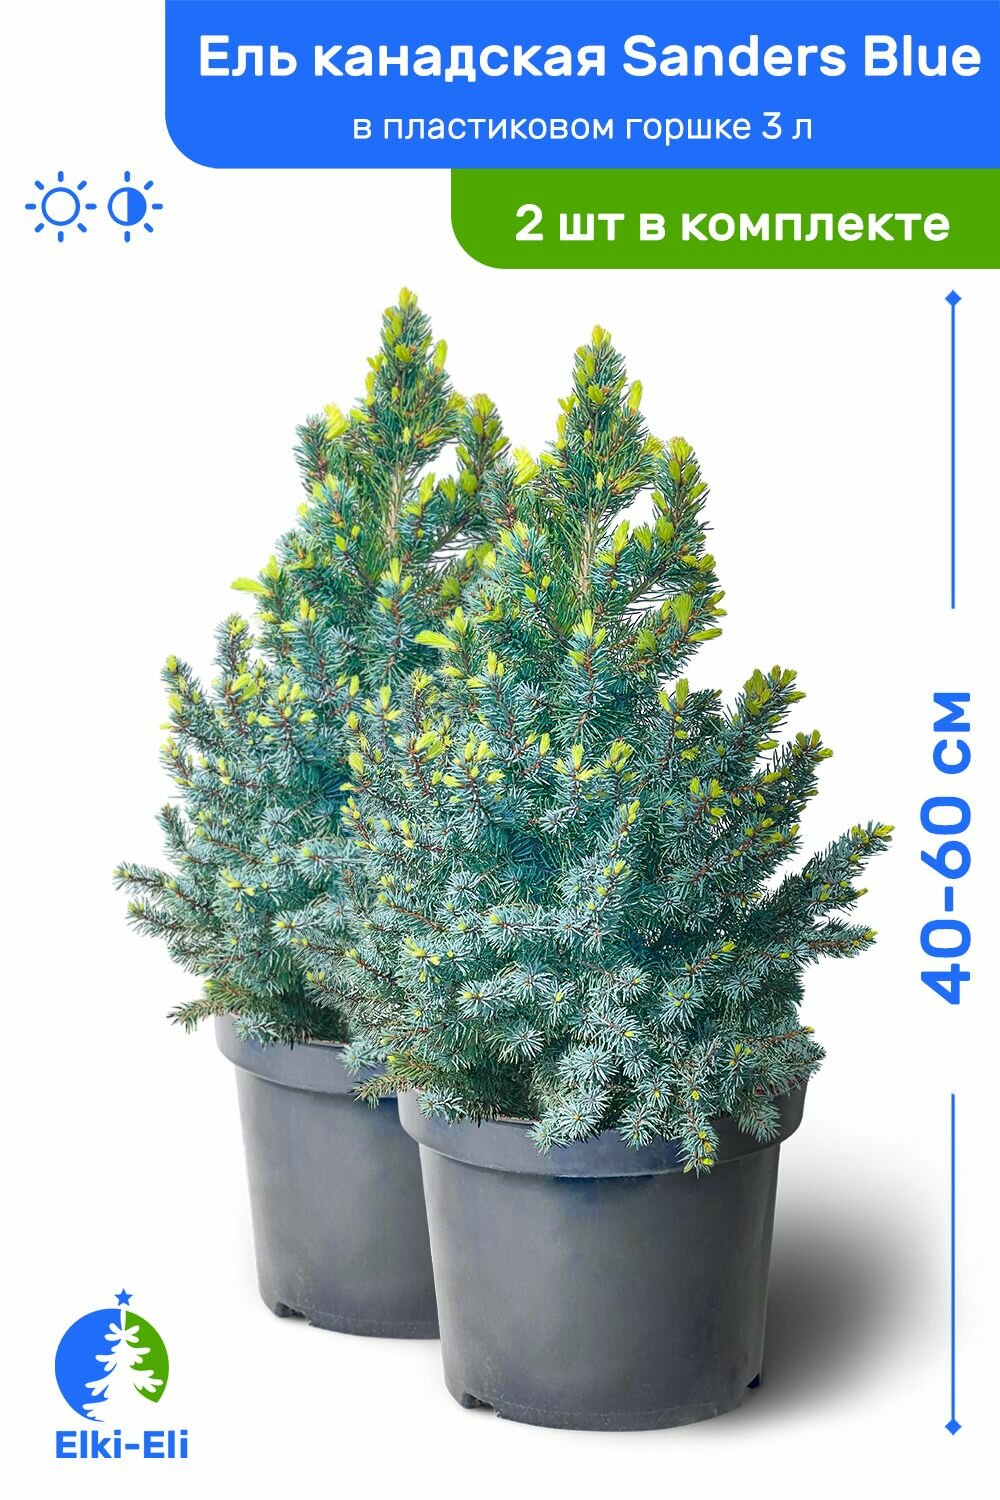 Ель канадская Sanders Blue (Сандерс Блю) 40-60 см в пластиковом горшке 3 л саженец хвойное живое растение комплект из 2 шт